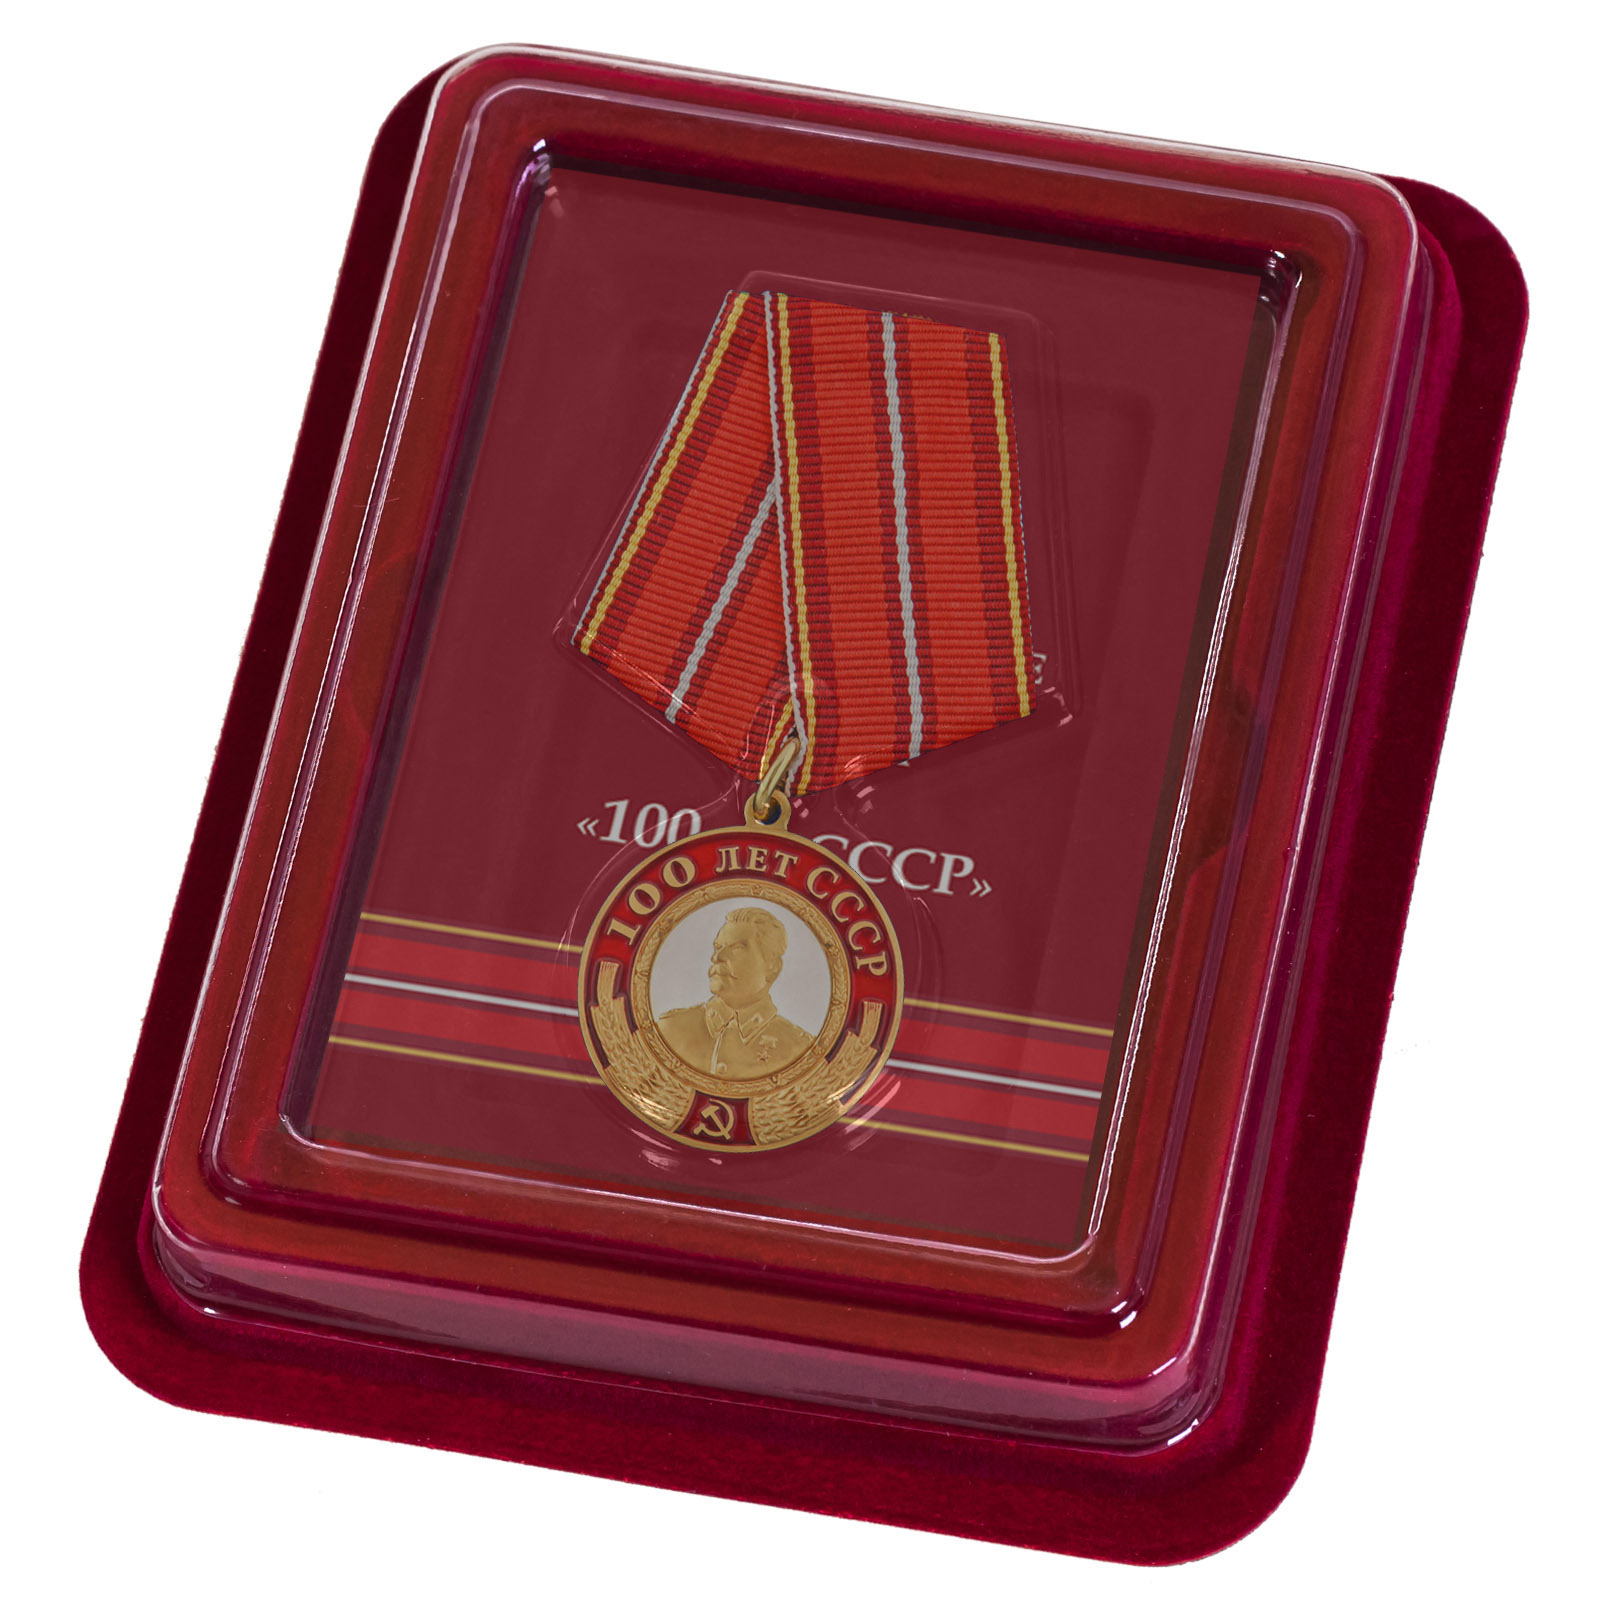 Купить медаль со Сталиным 100 лет СССР по лучшей цене